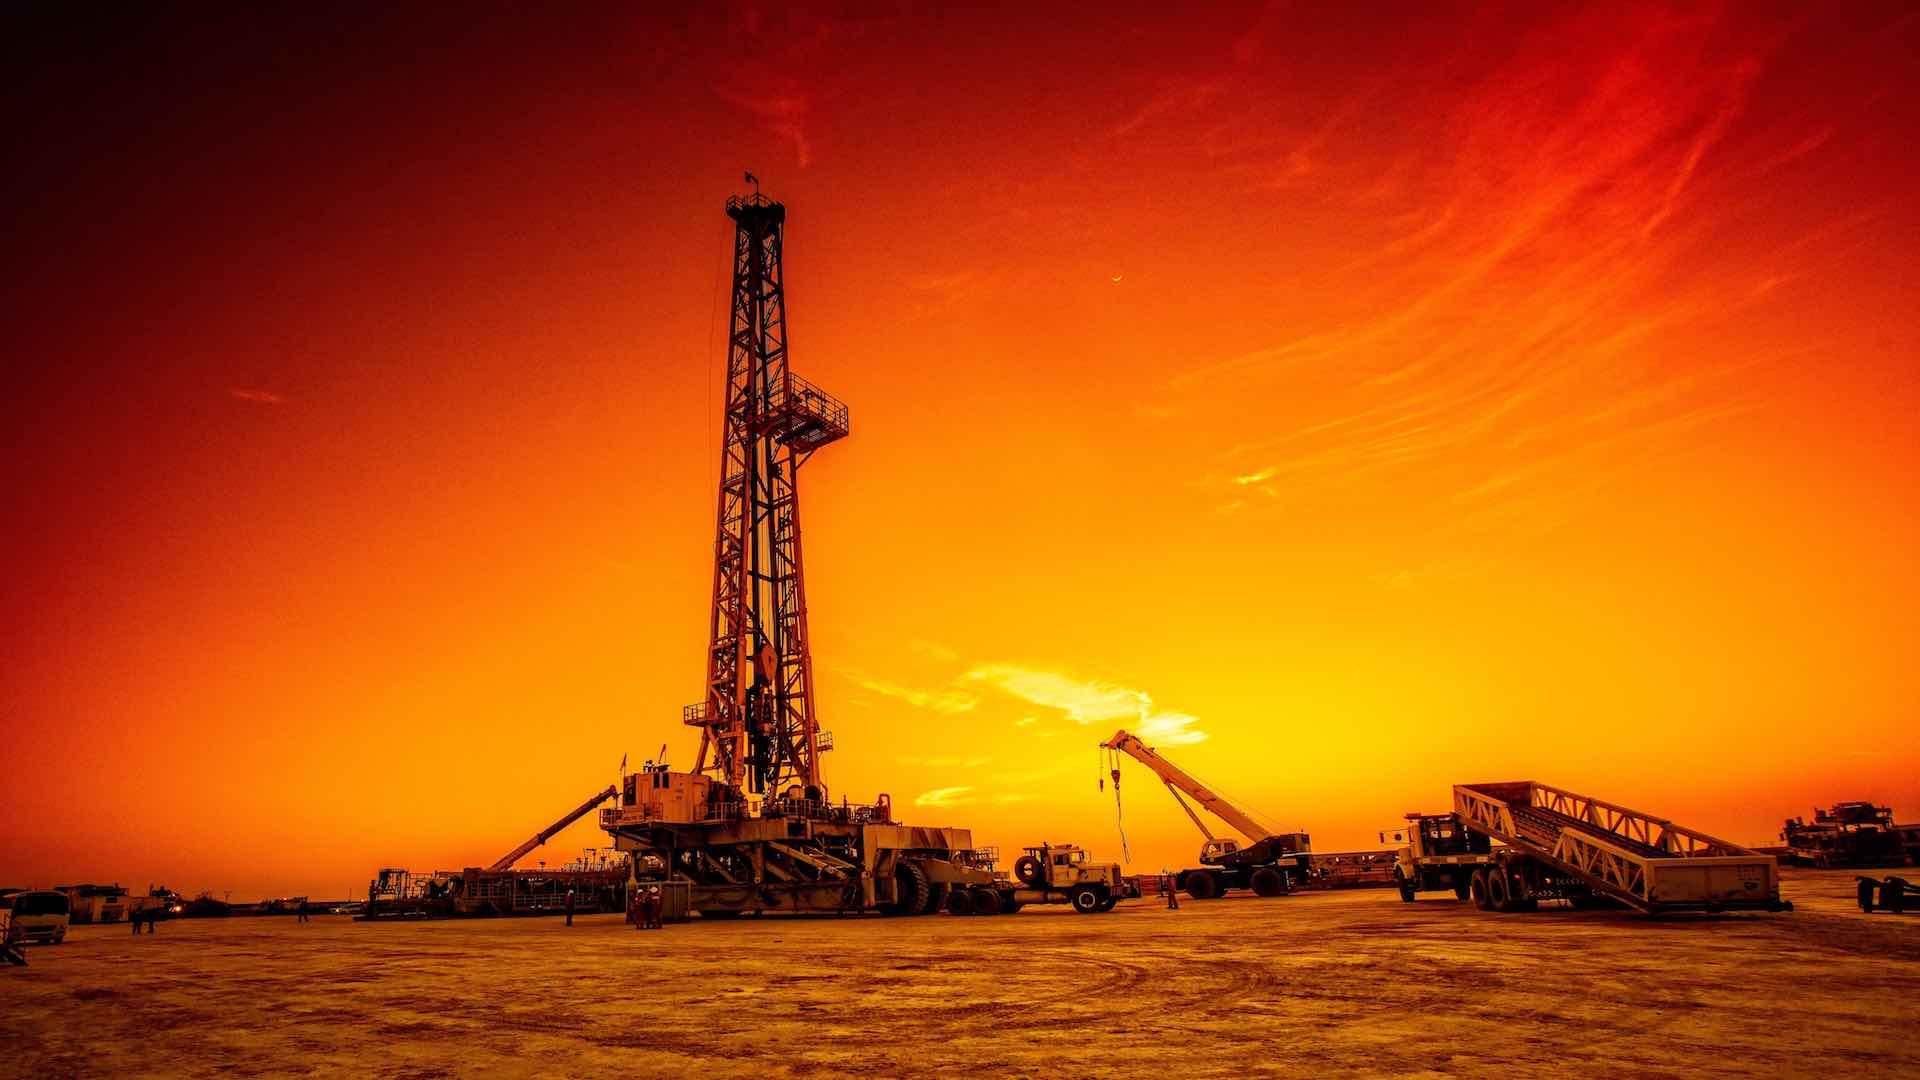 Les analystes prévoient un prix du pétrole à 90 dollars en raison de la montée des conflits au Moyen-Orient